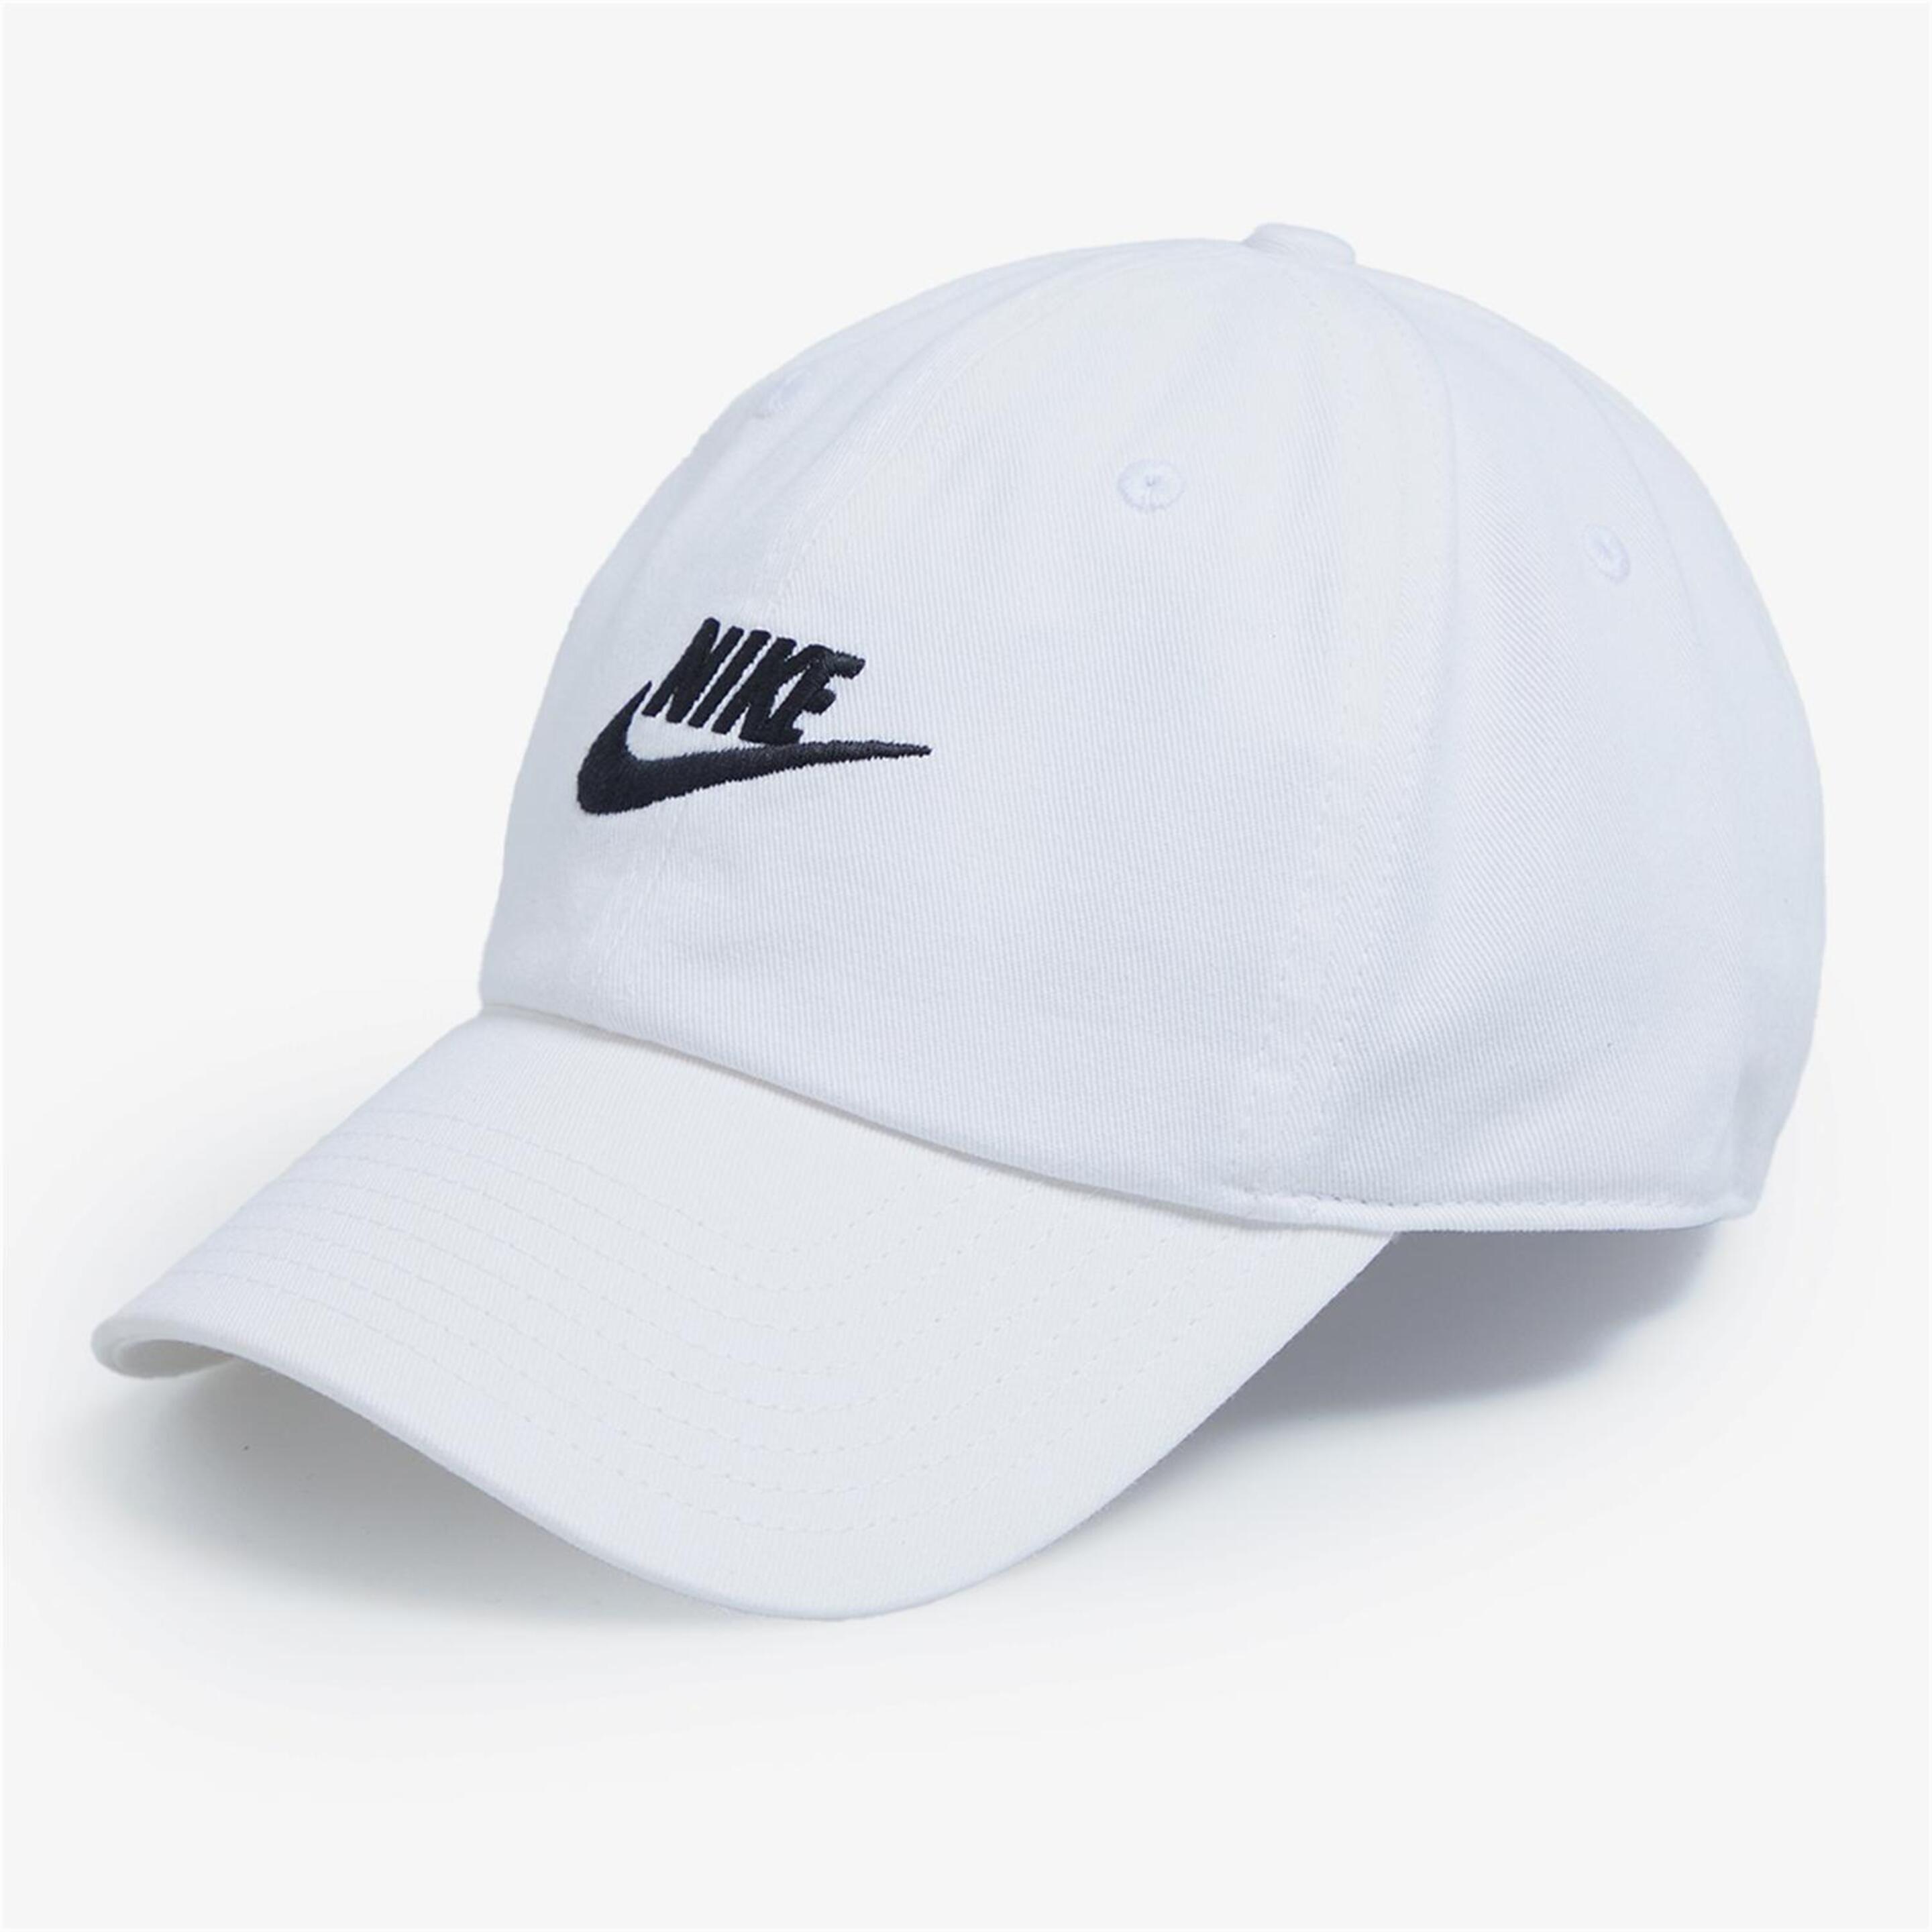 Nike Club - blanco - Boné